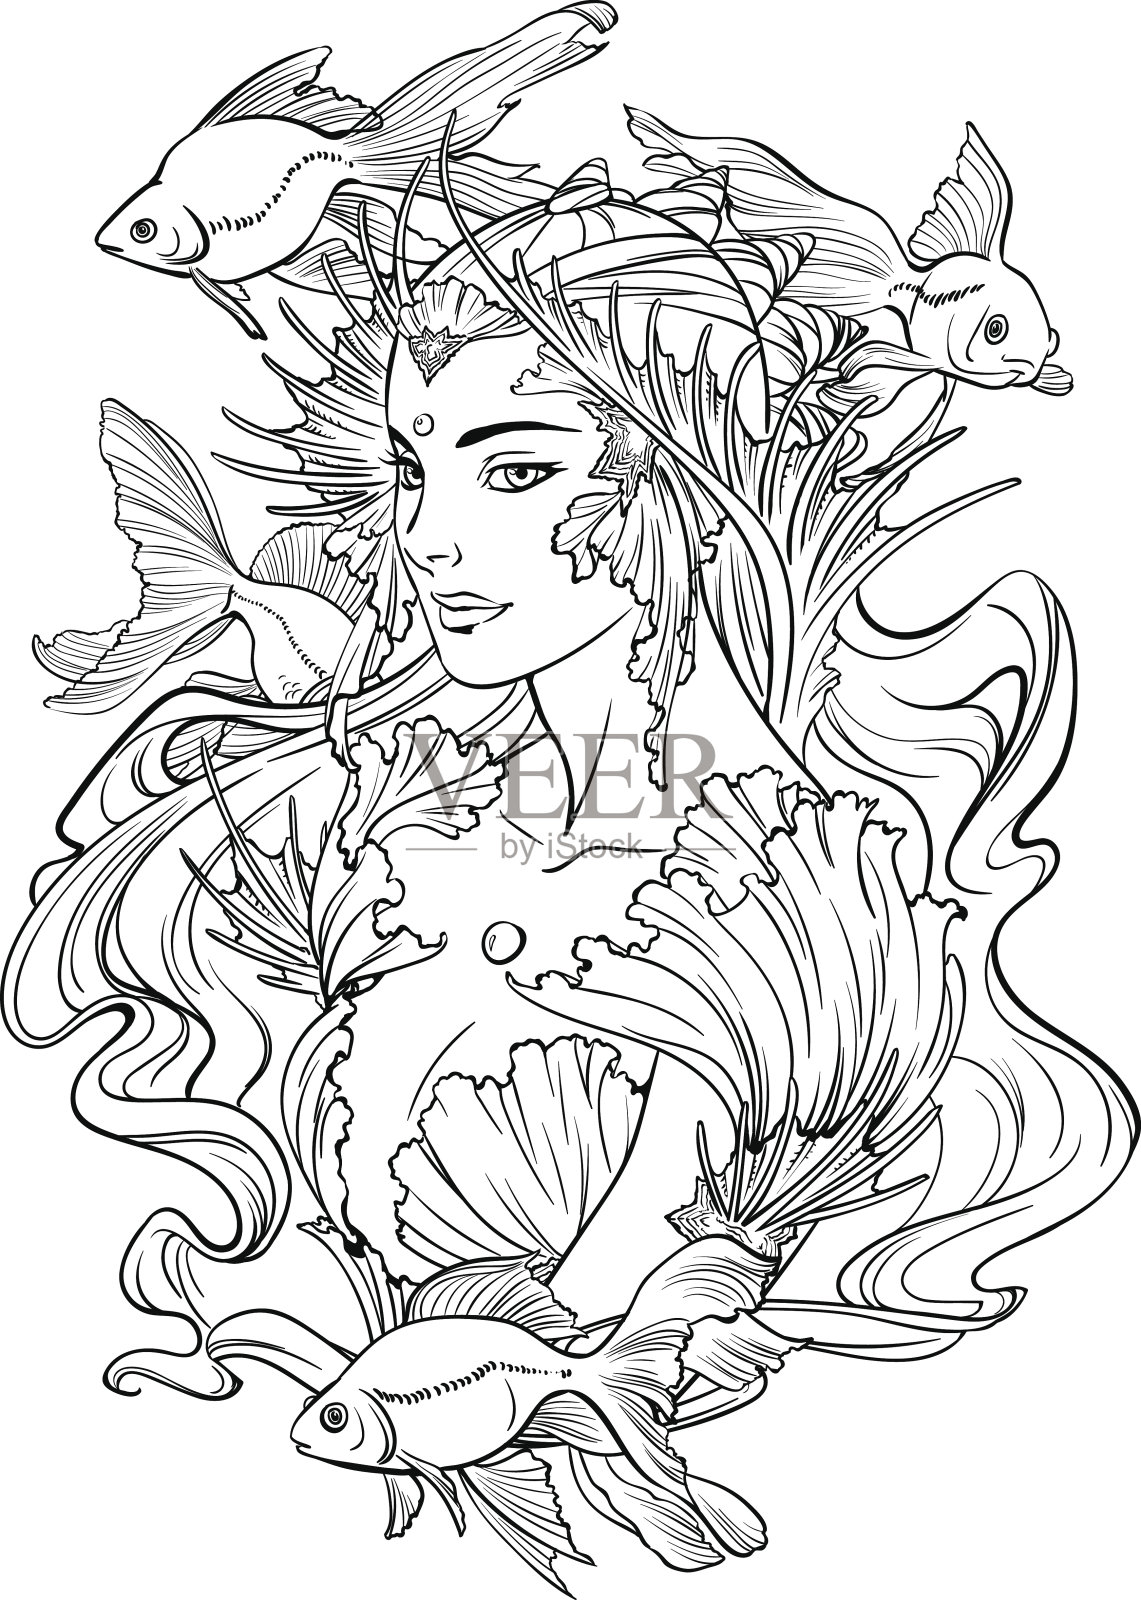 美人鱼公主和金鱼的插图。插画图片素材